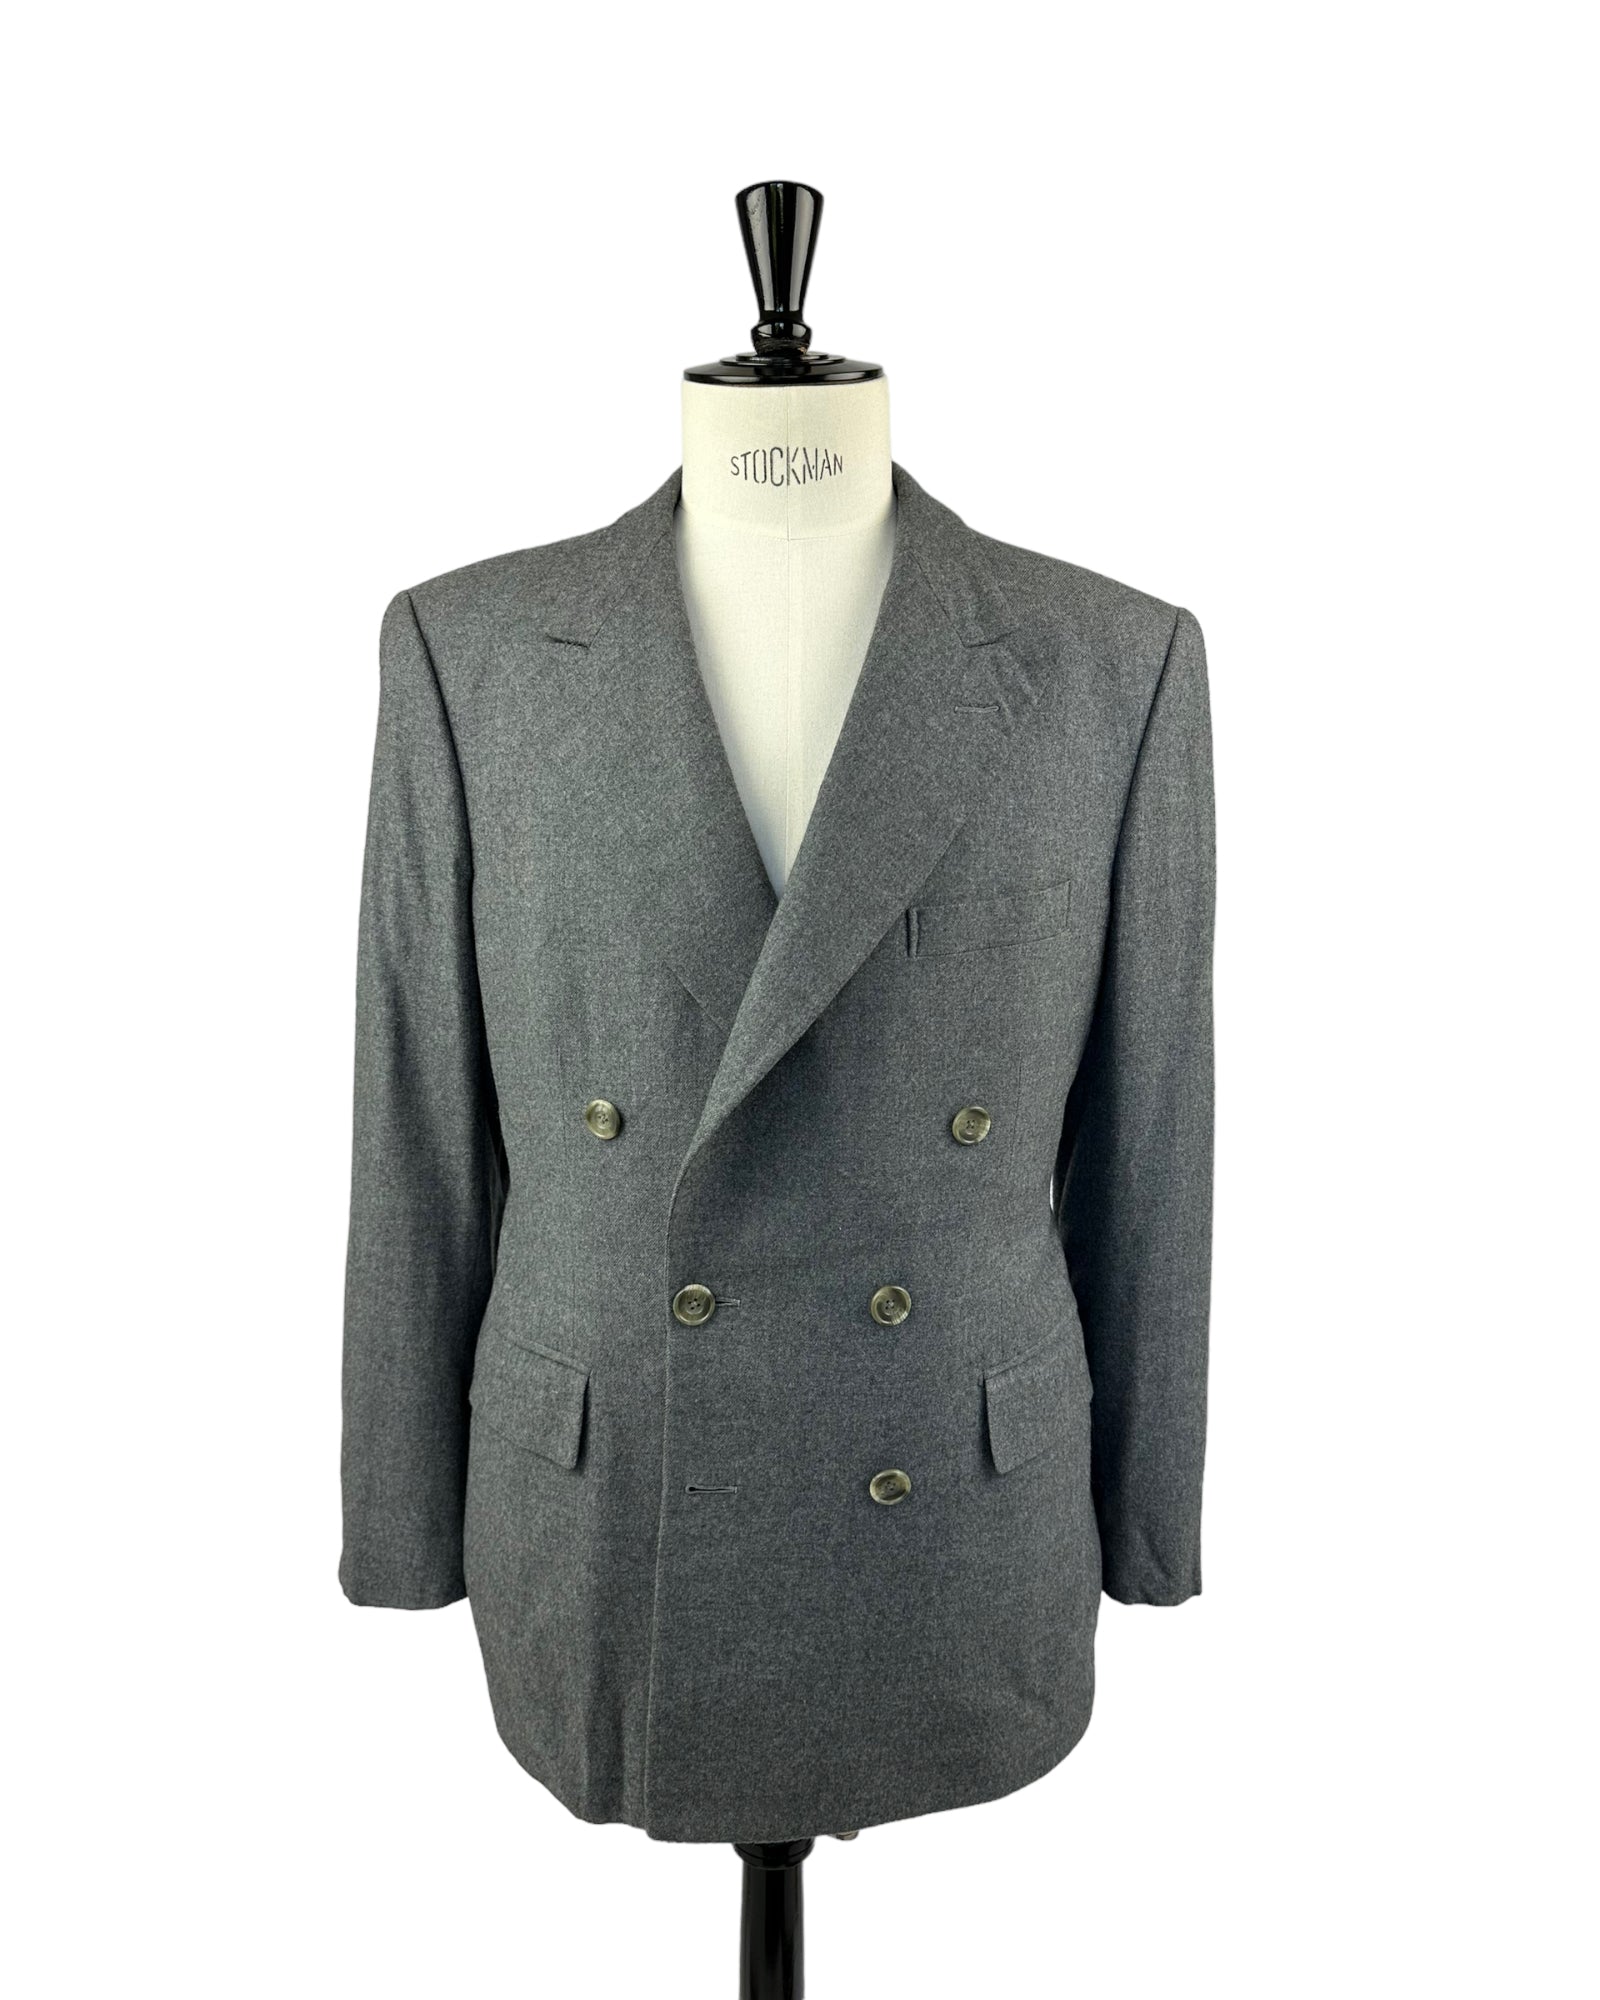 Edward Sexton Vintage flanellen jasje met dubbele rij knopen